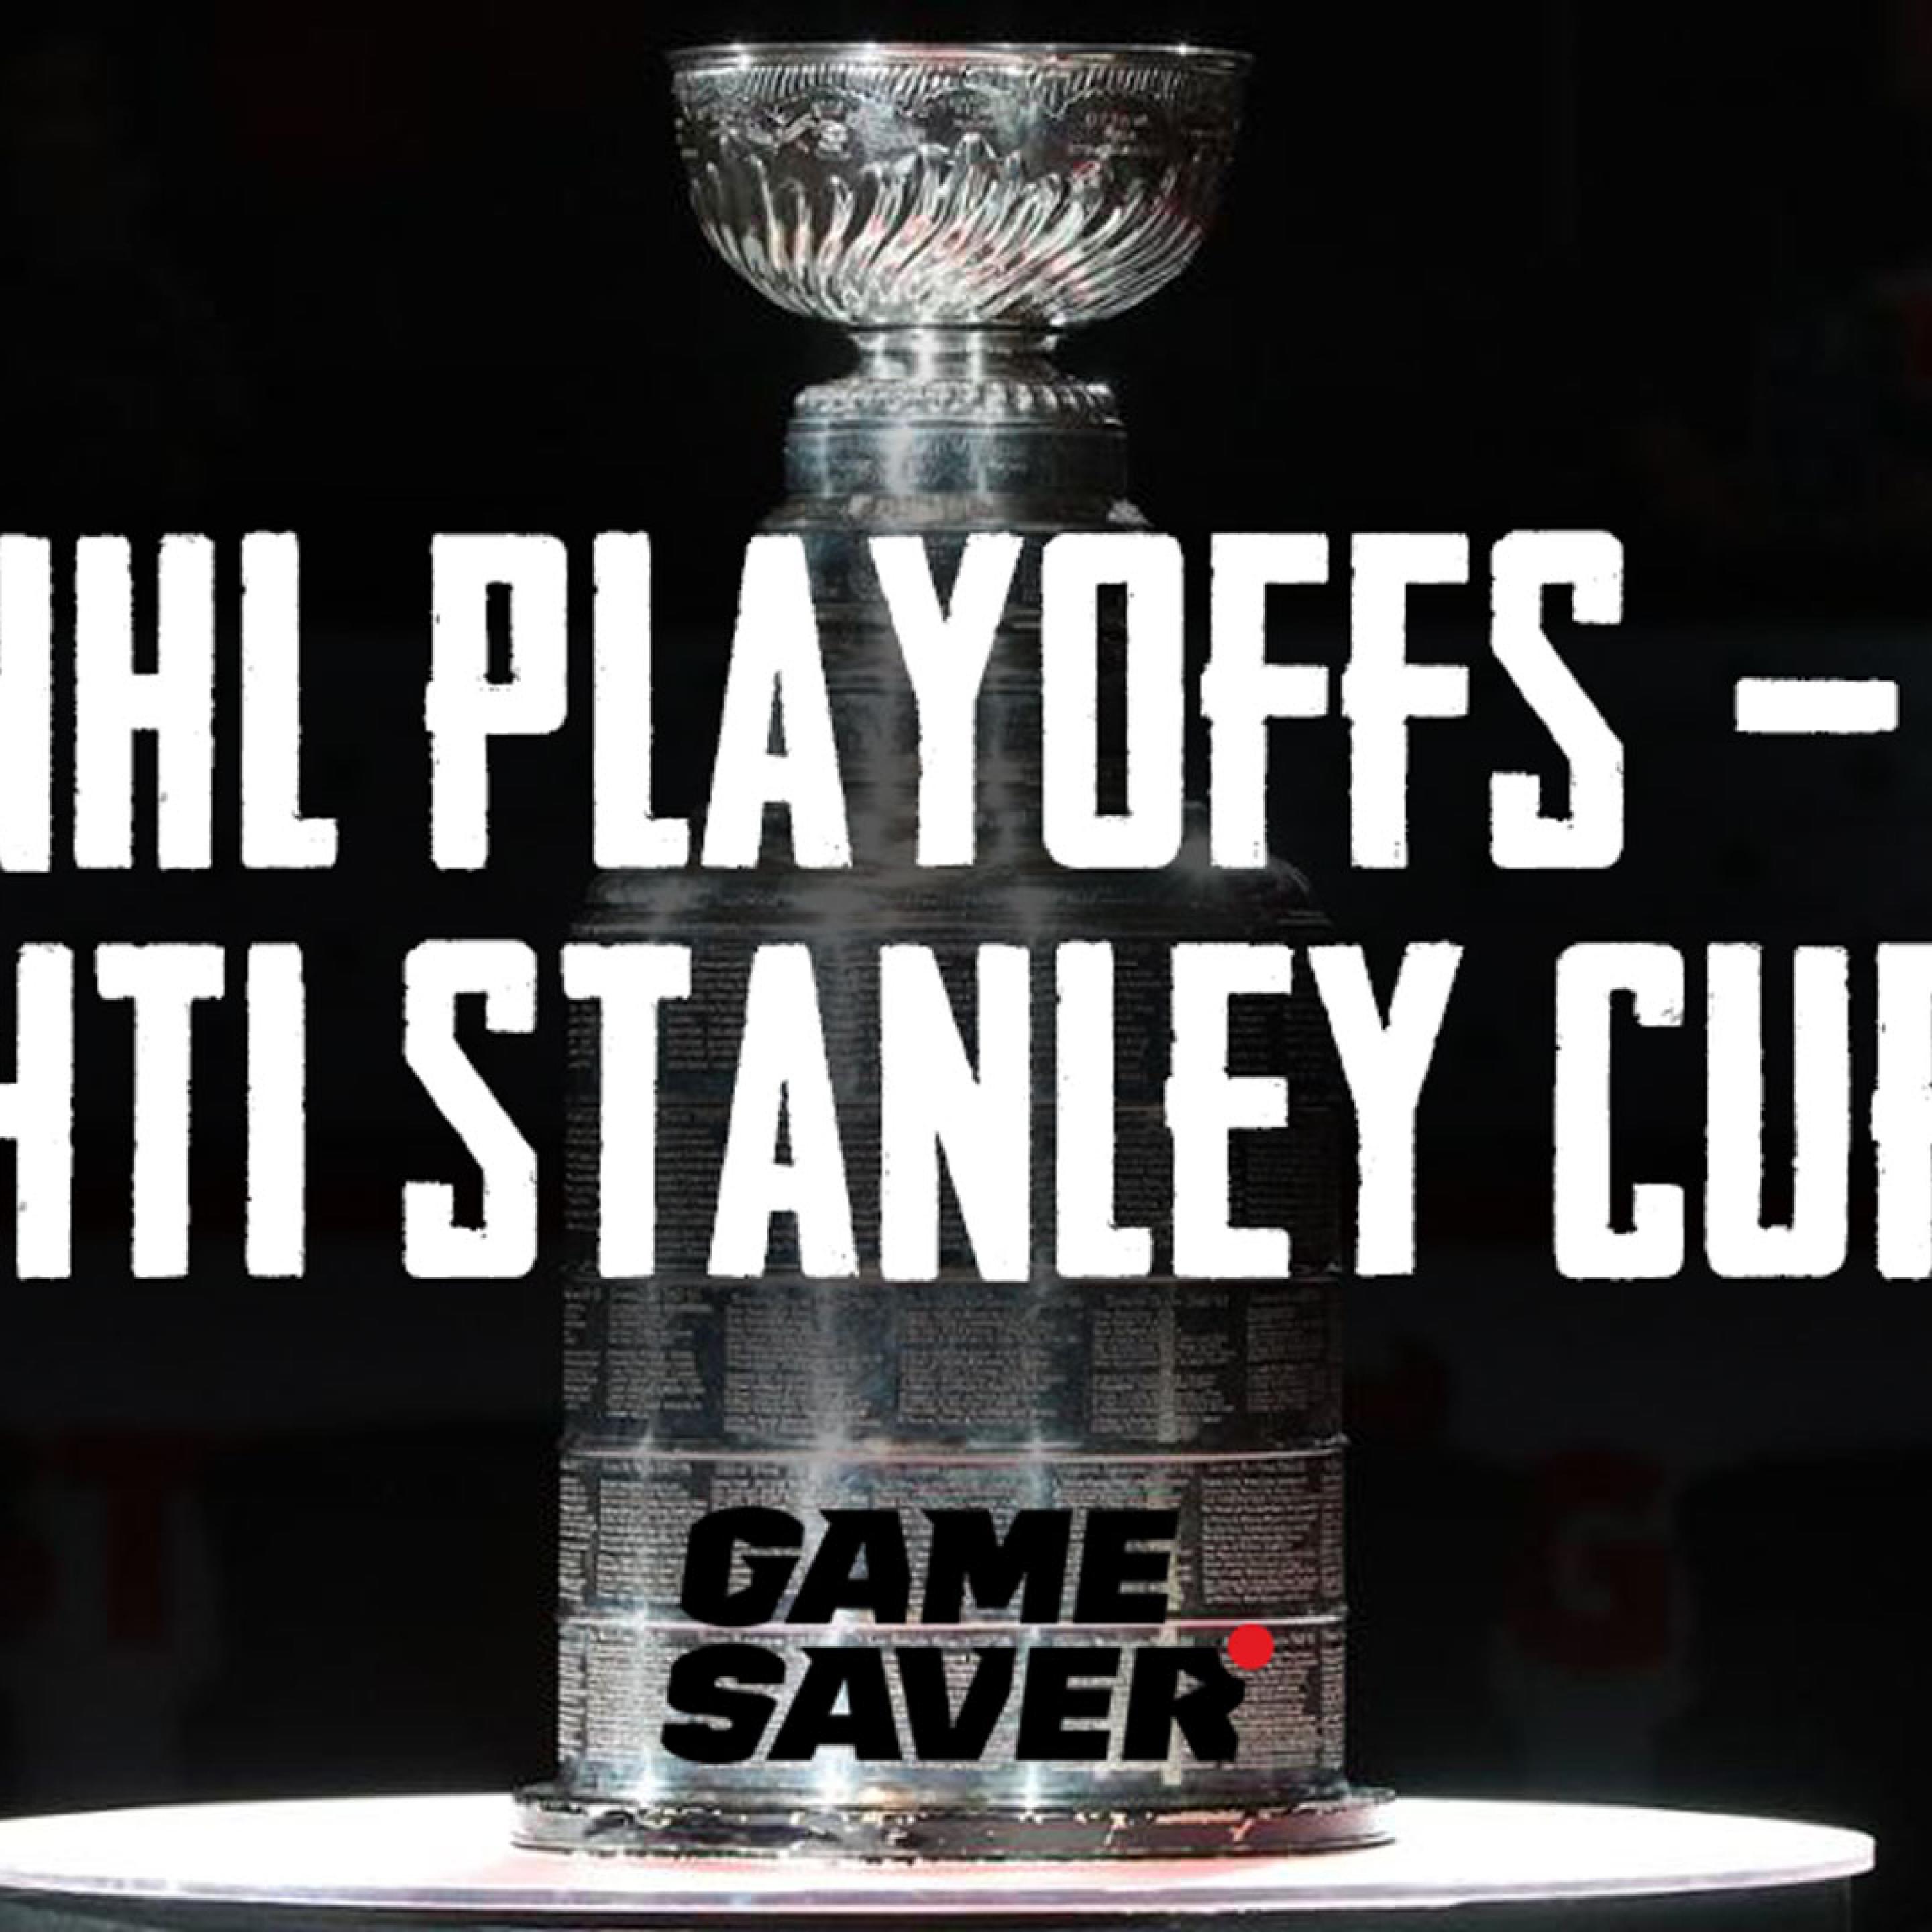 NHL-playoffs - kohti Stanley cupia - podcast